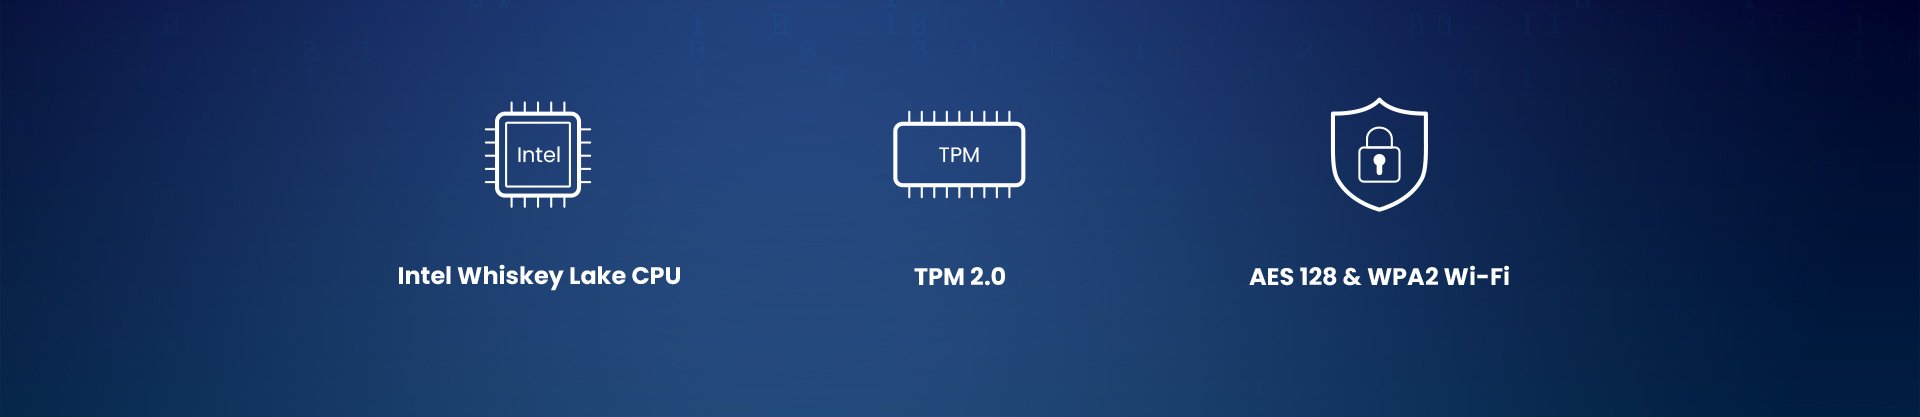 Intel Whiskey Lake CPU/TPM 2.0/ AES 128 & WPA2 Wi-Fi